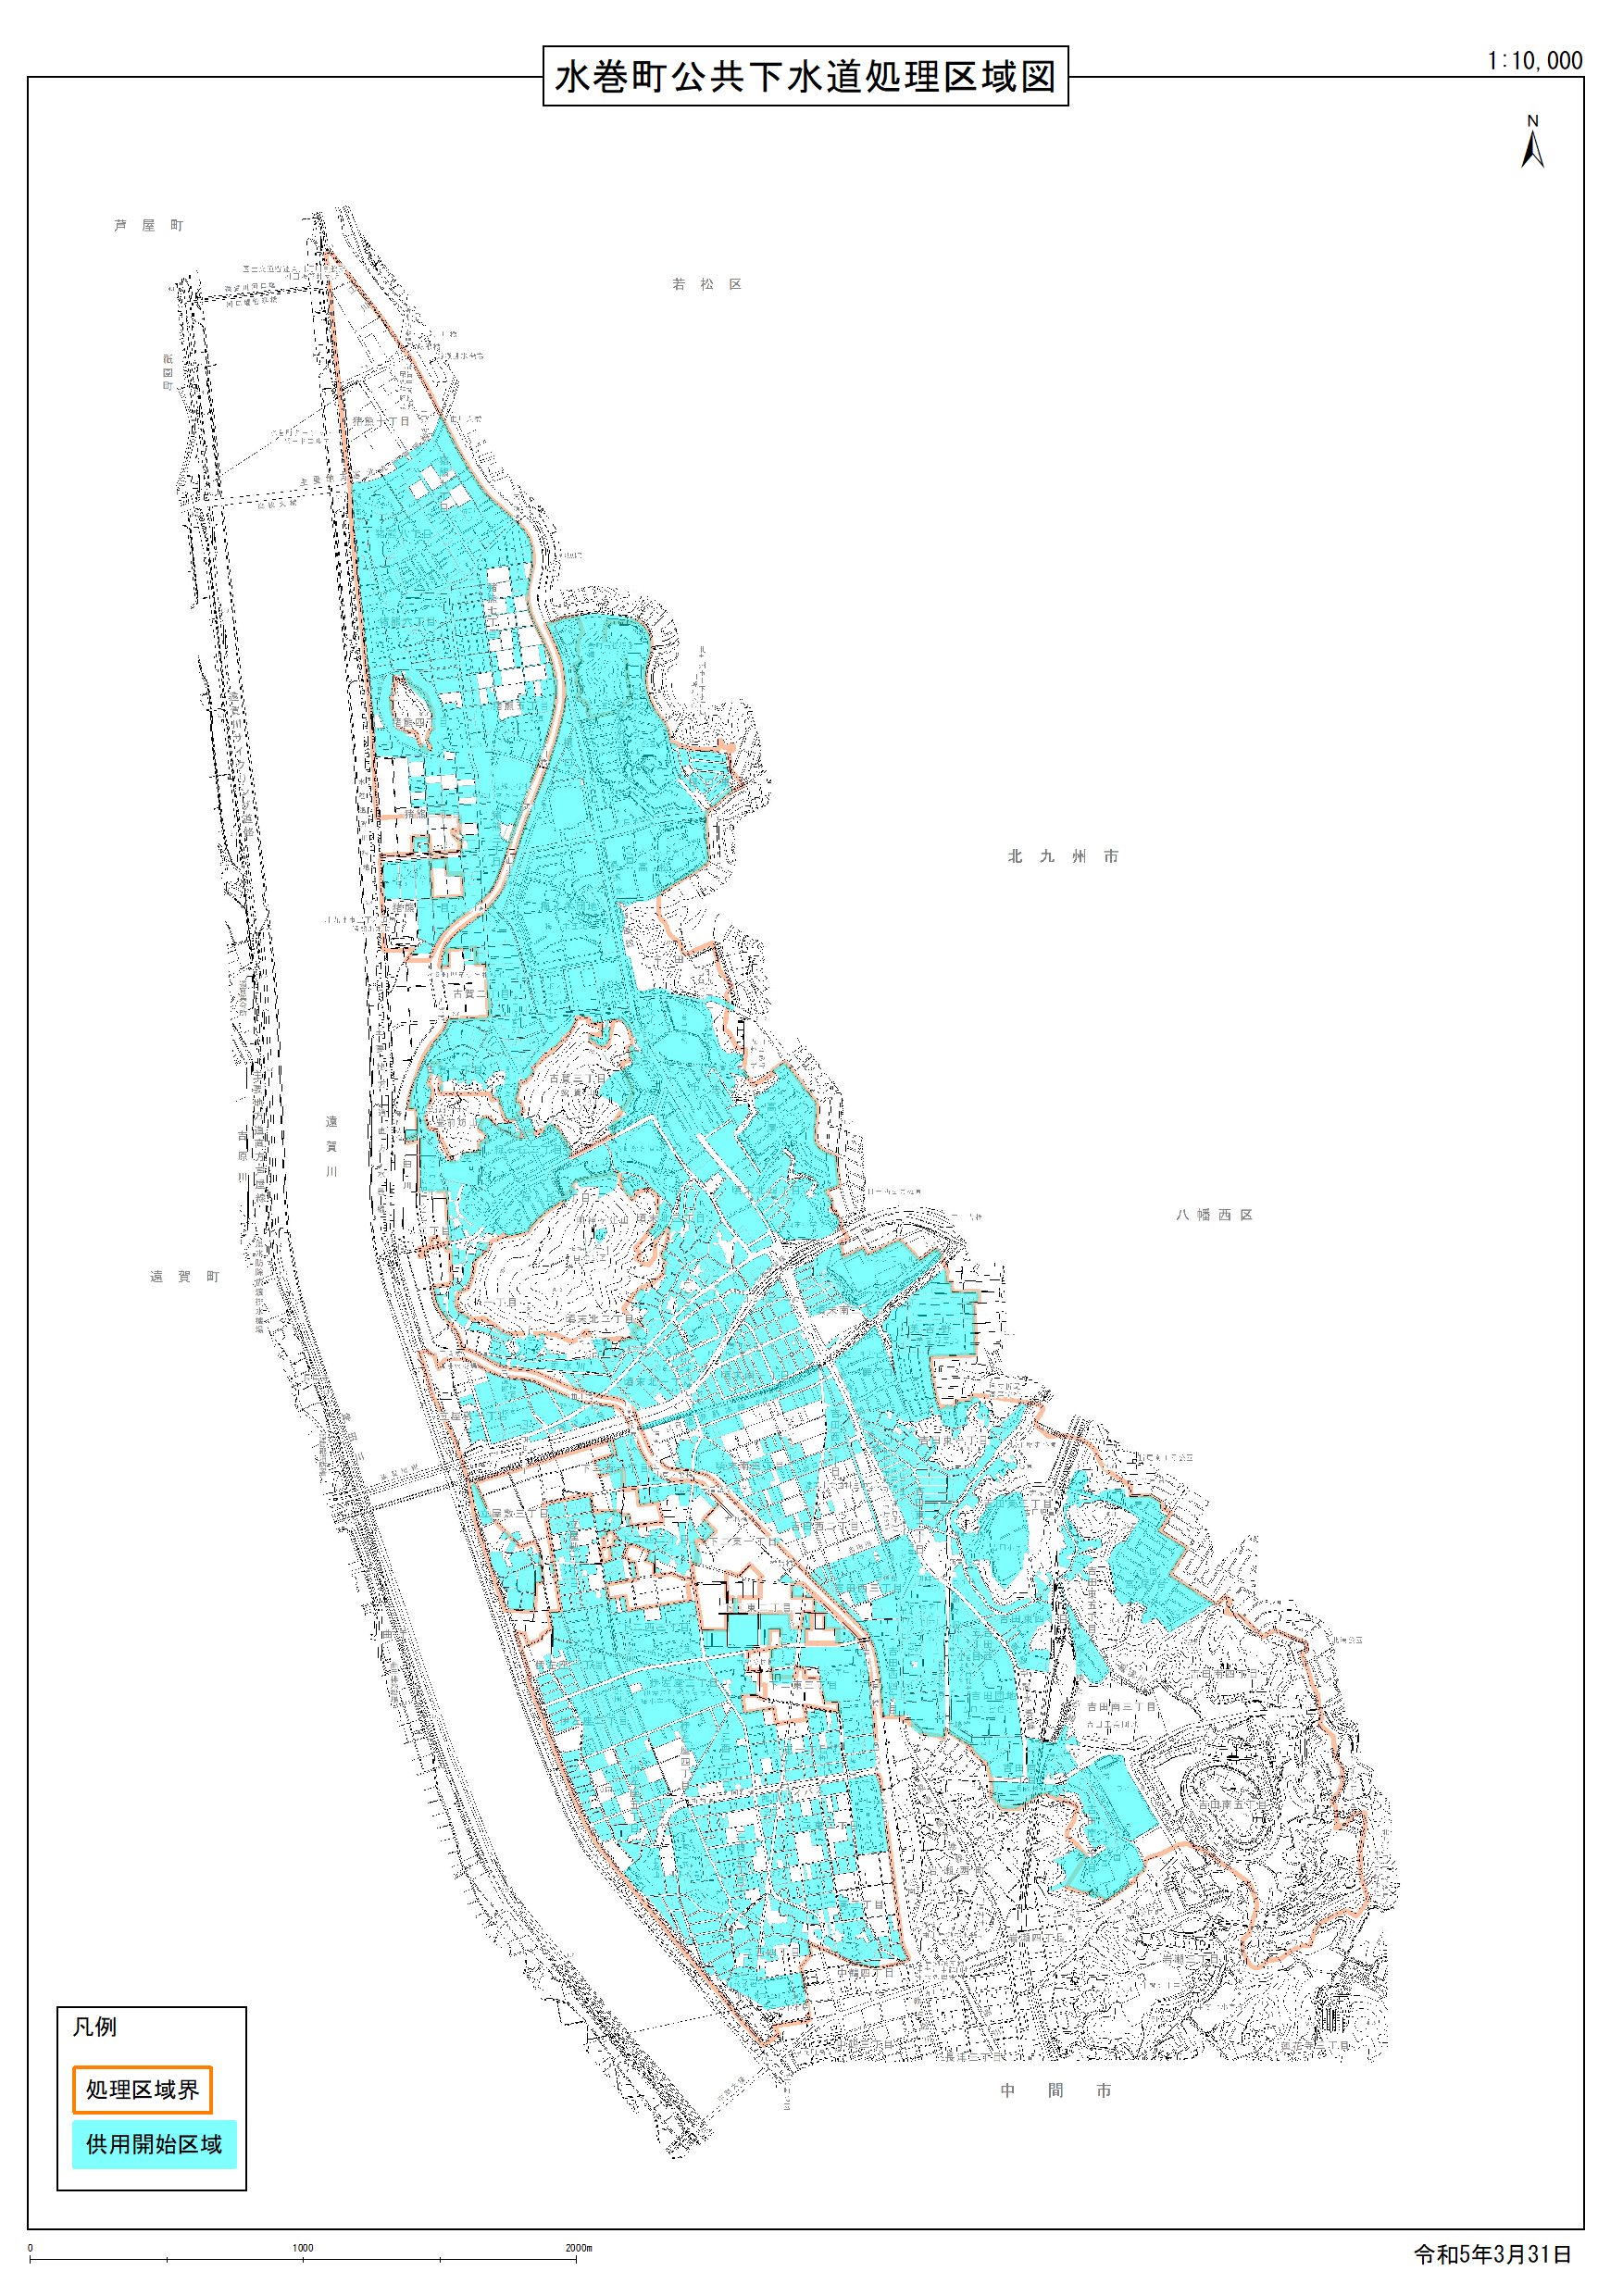 水巻町公共下水道供用開始区域マップ図